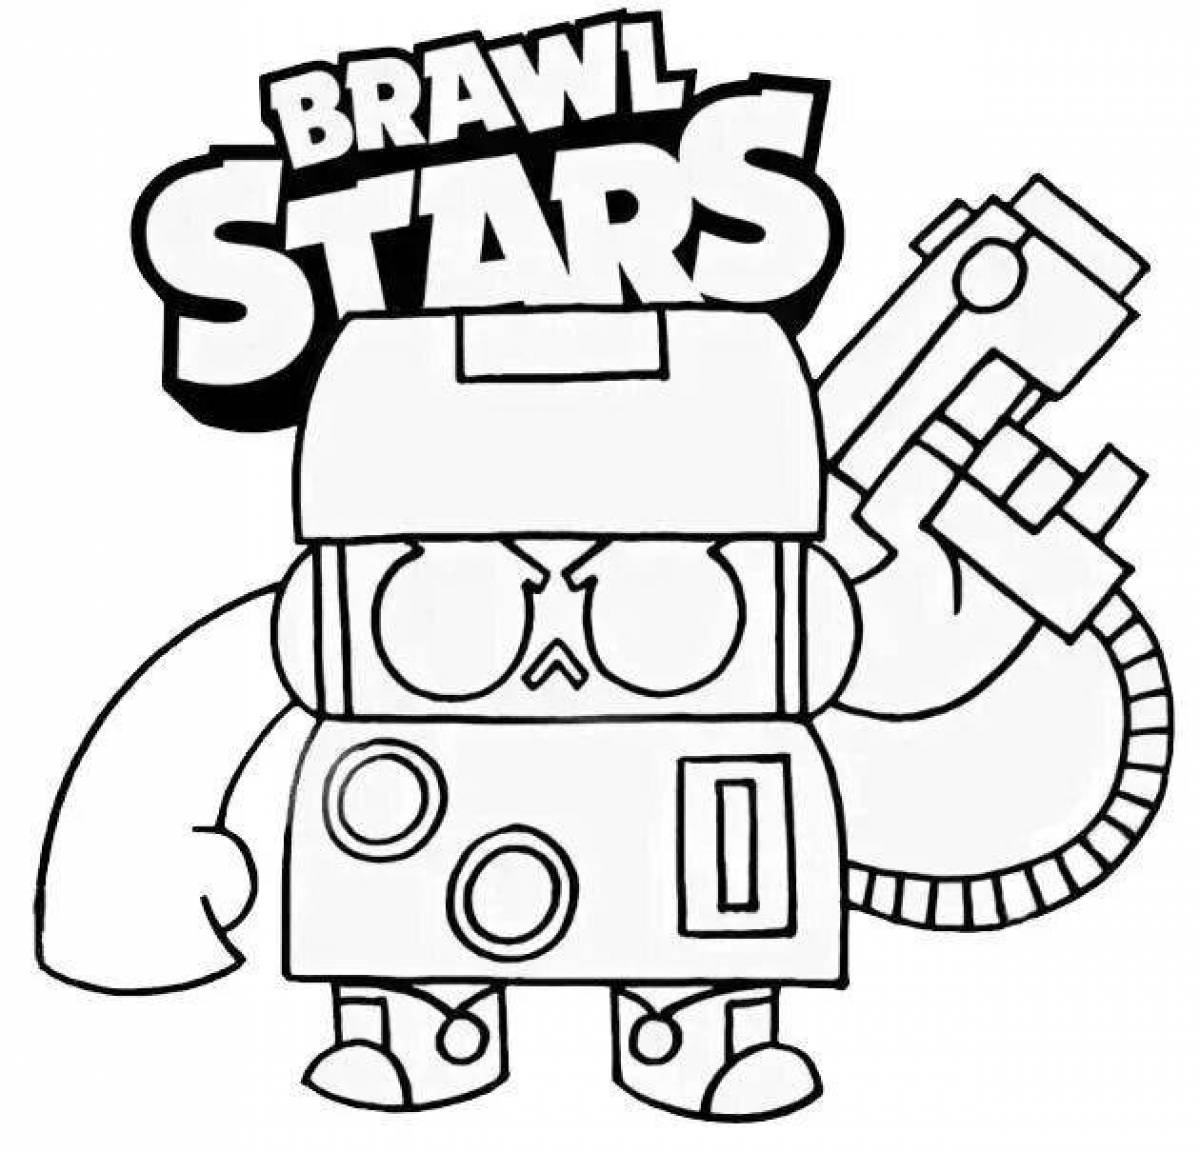 From brawl stars 8 bit #11